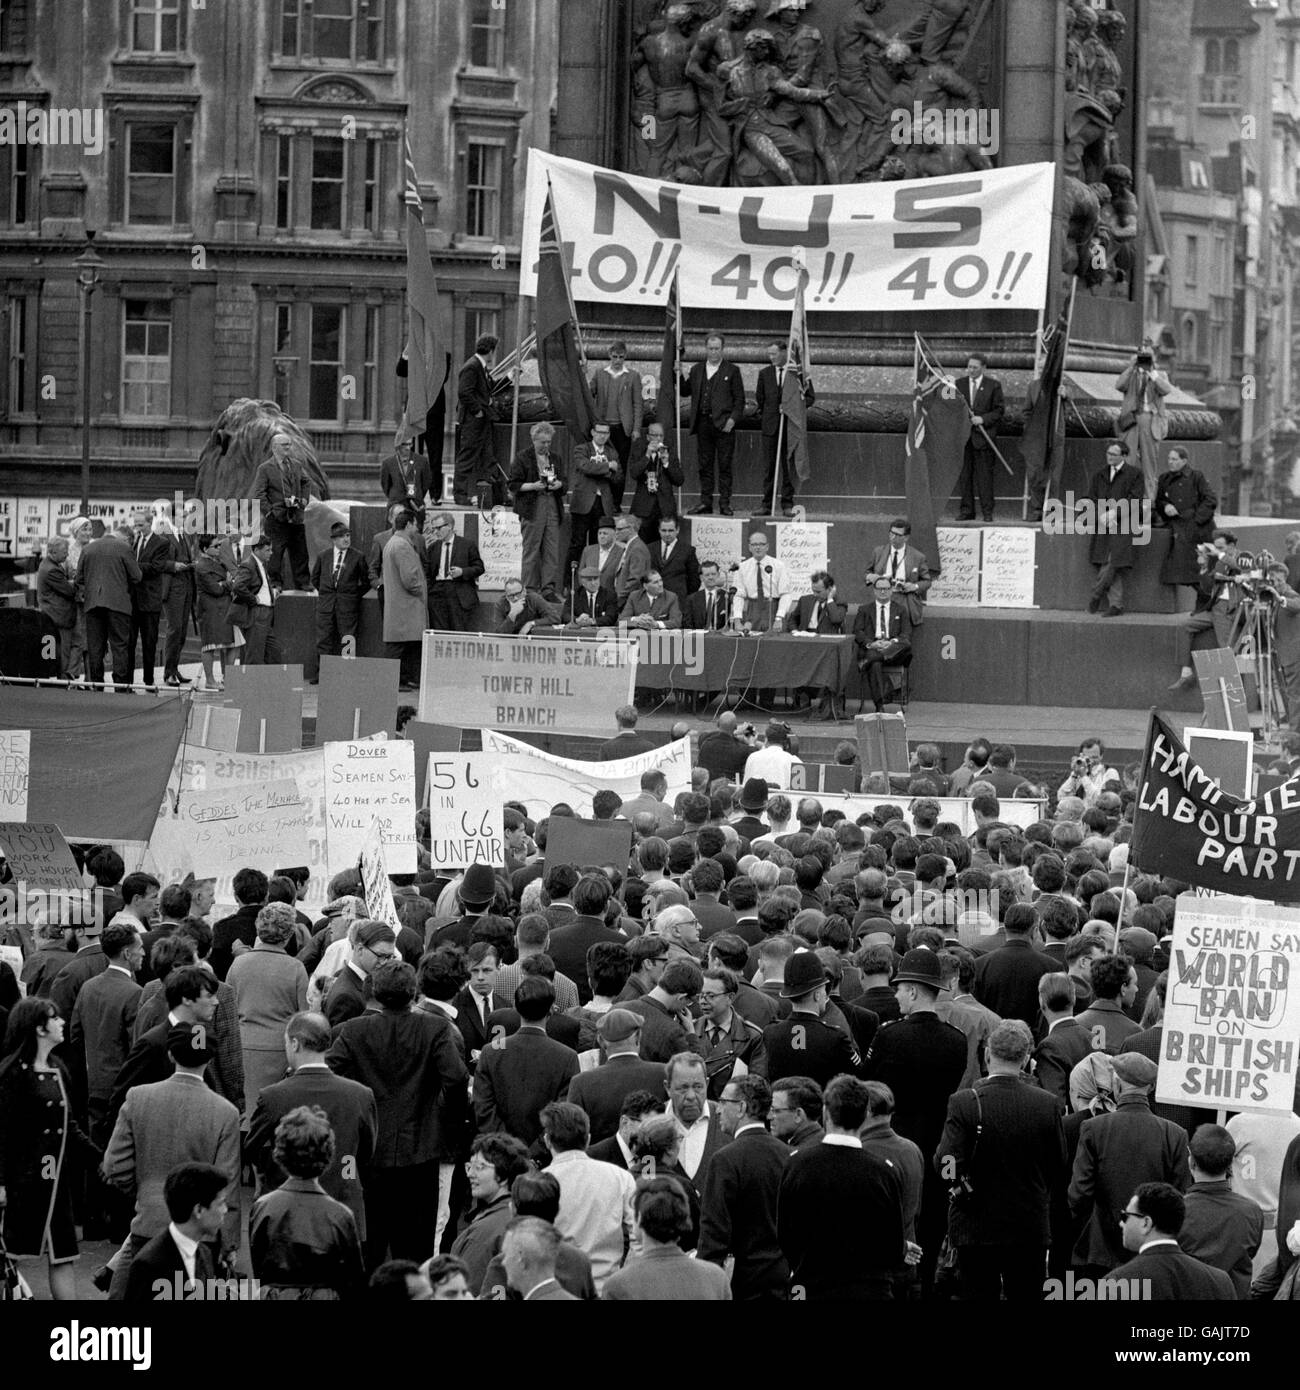 Bill Hogarth, segretario generale dell'Unione Nazionale dei marinai, con maniche da maglietta, si trova sulla colonna di Nelson&#8217;a Trafalgar Square per affrontare una riunione di massa dei membri dell'Unione che si erano riuniti a Londra per dimostrare la loro solidarietà nello sciopero dei marinai&#8217;s. Foto Stock